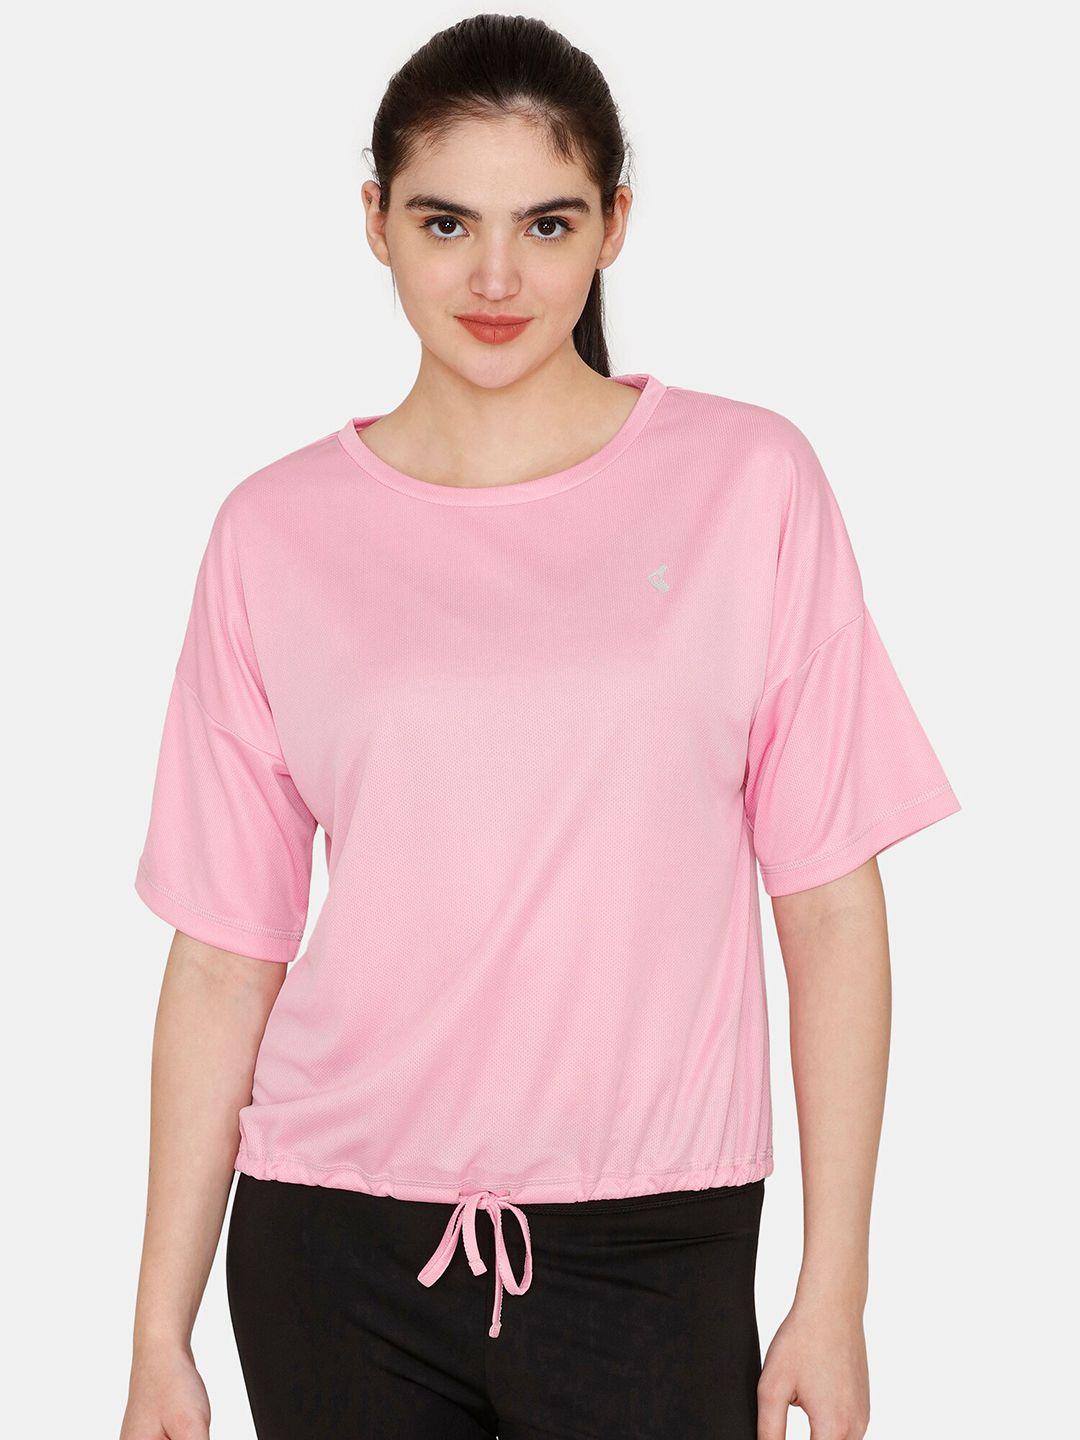 zelocity by zivame women pink sweatshirt